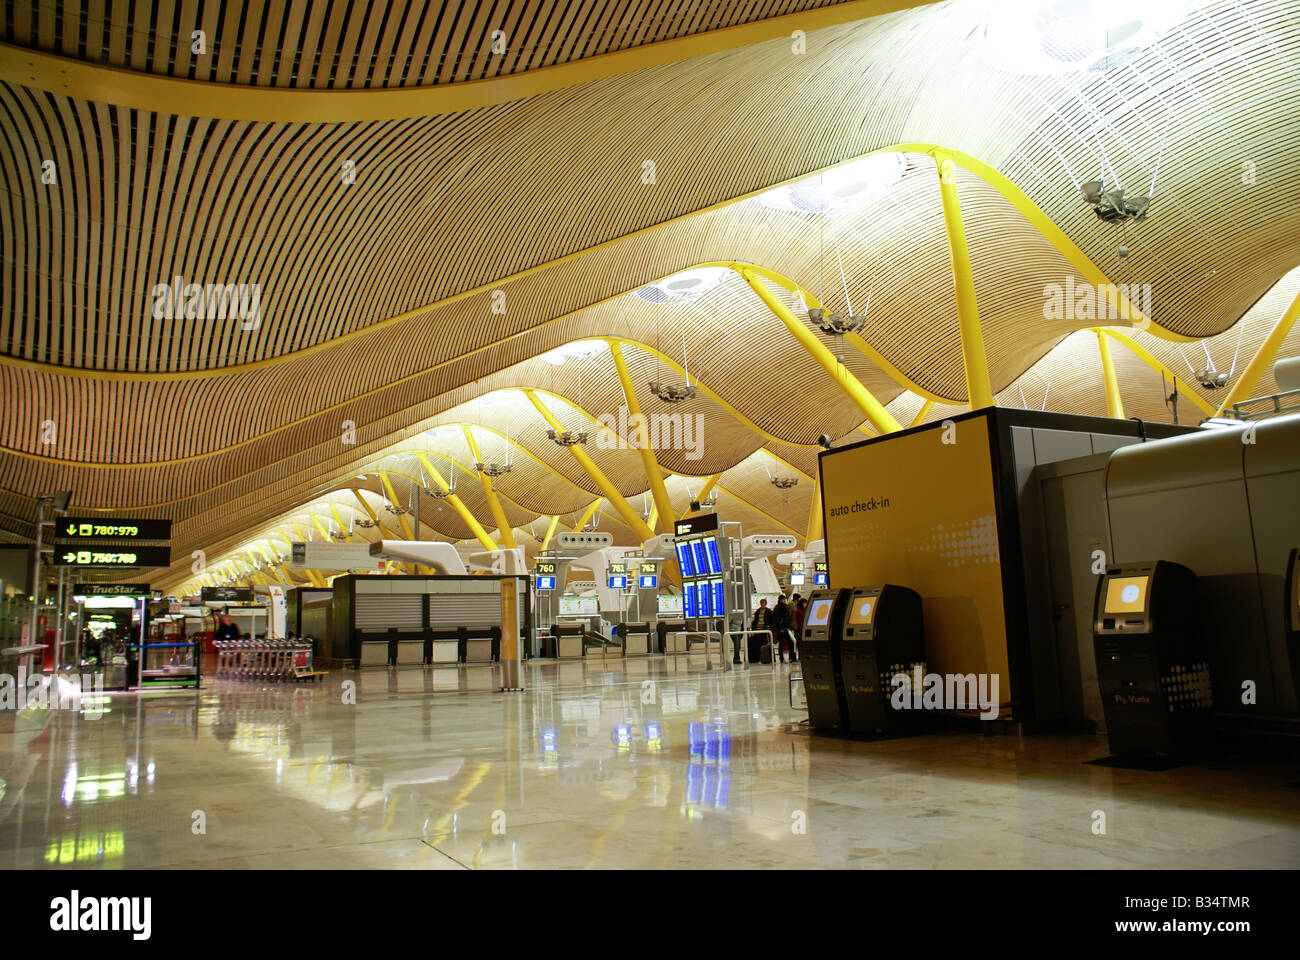 Aeroporto internazionale di Madrid Barajas (aeroporto), Terminale 4 Foto Stock